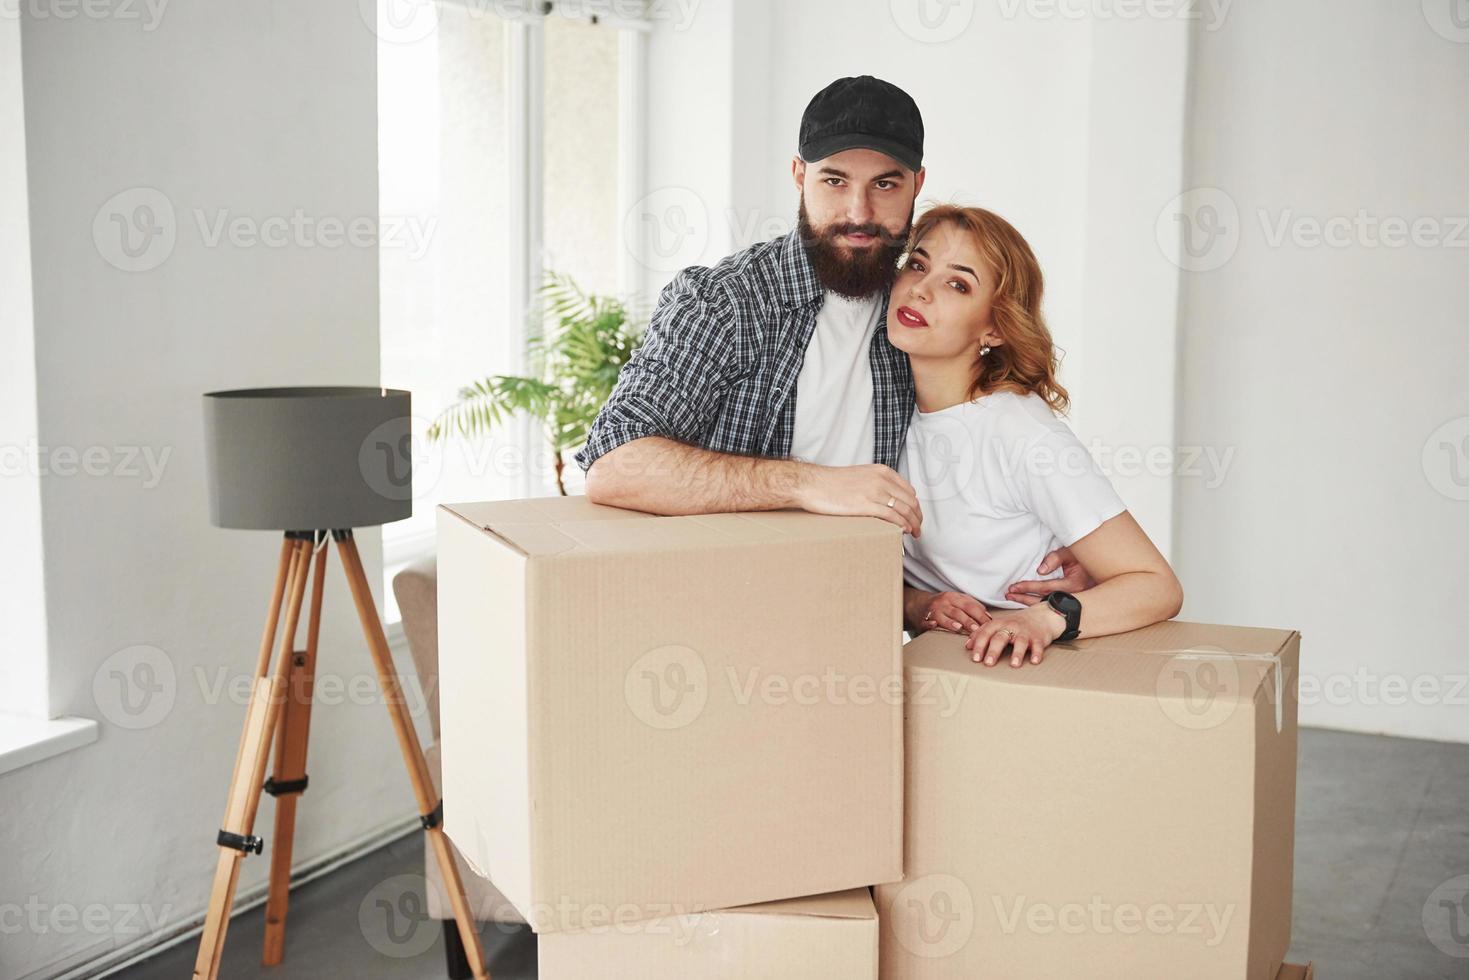 belo retrato. casal feliz juntos em sua nova casa. concepção de movimento foto